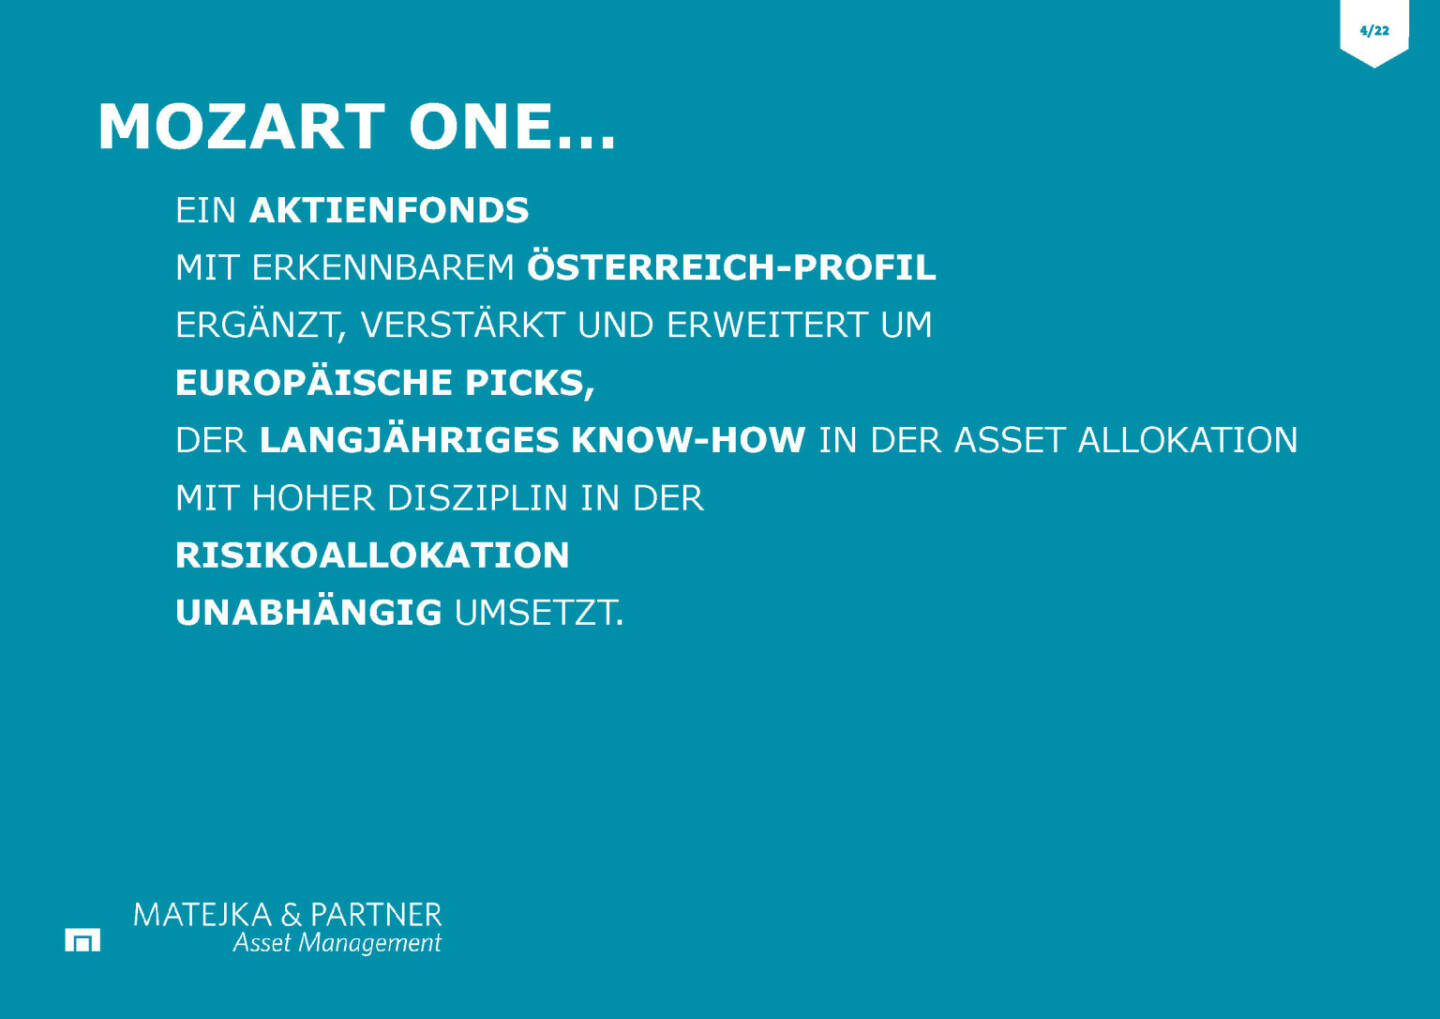 Wiener Privatbank - Mozart One Aktienfonds